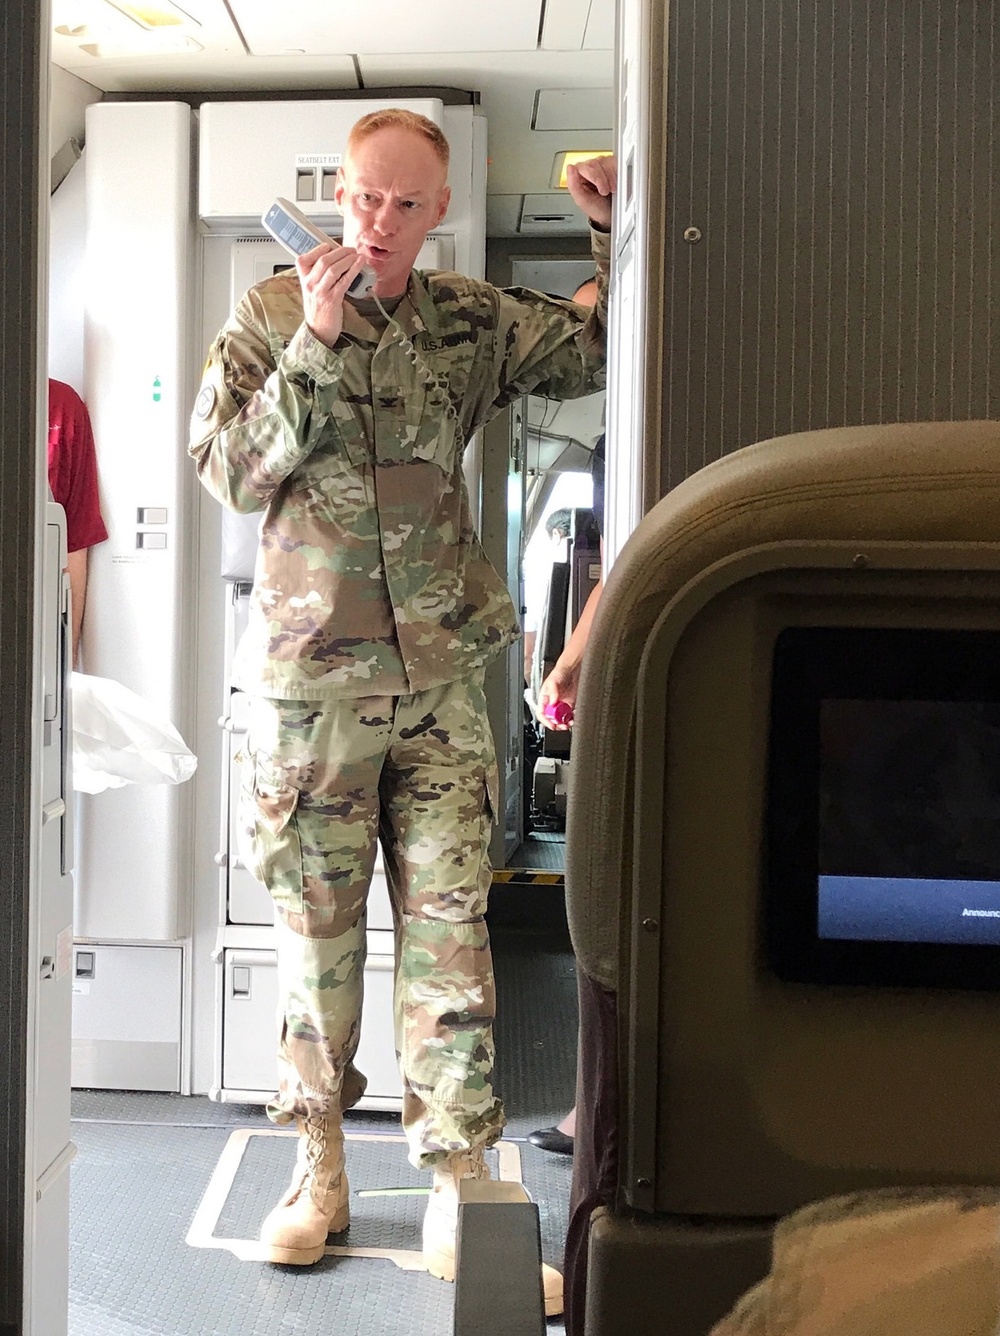 230th commander speaks to departing troops